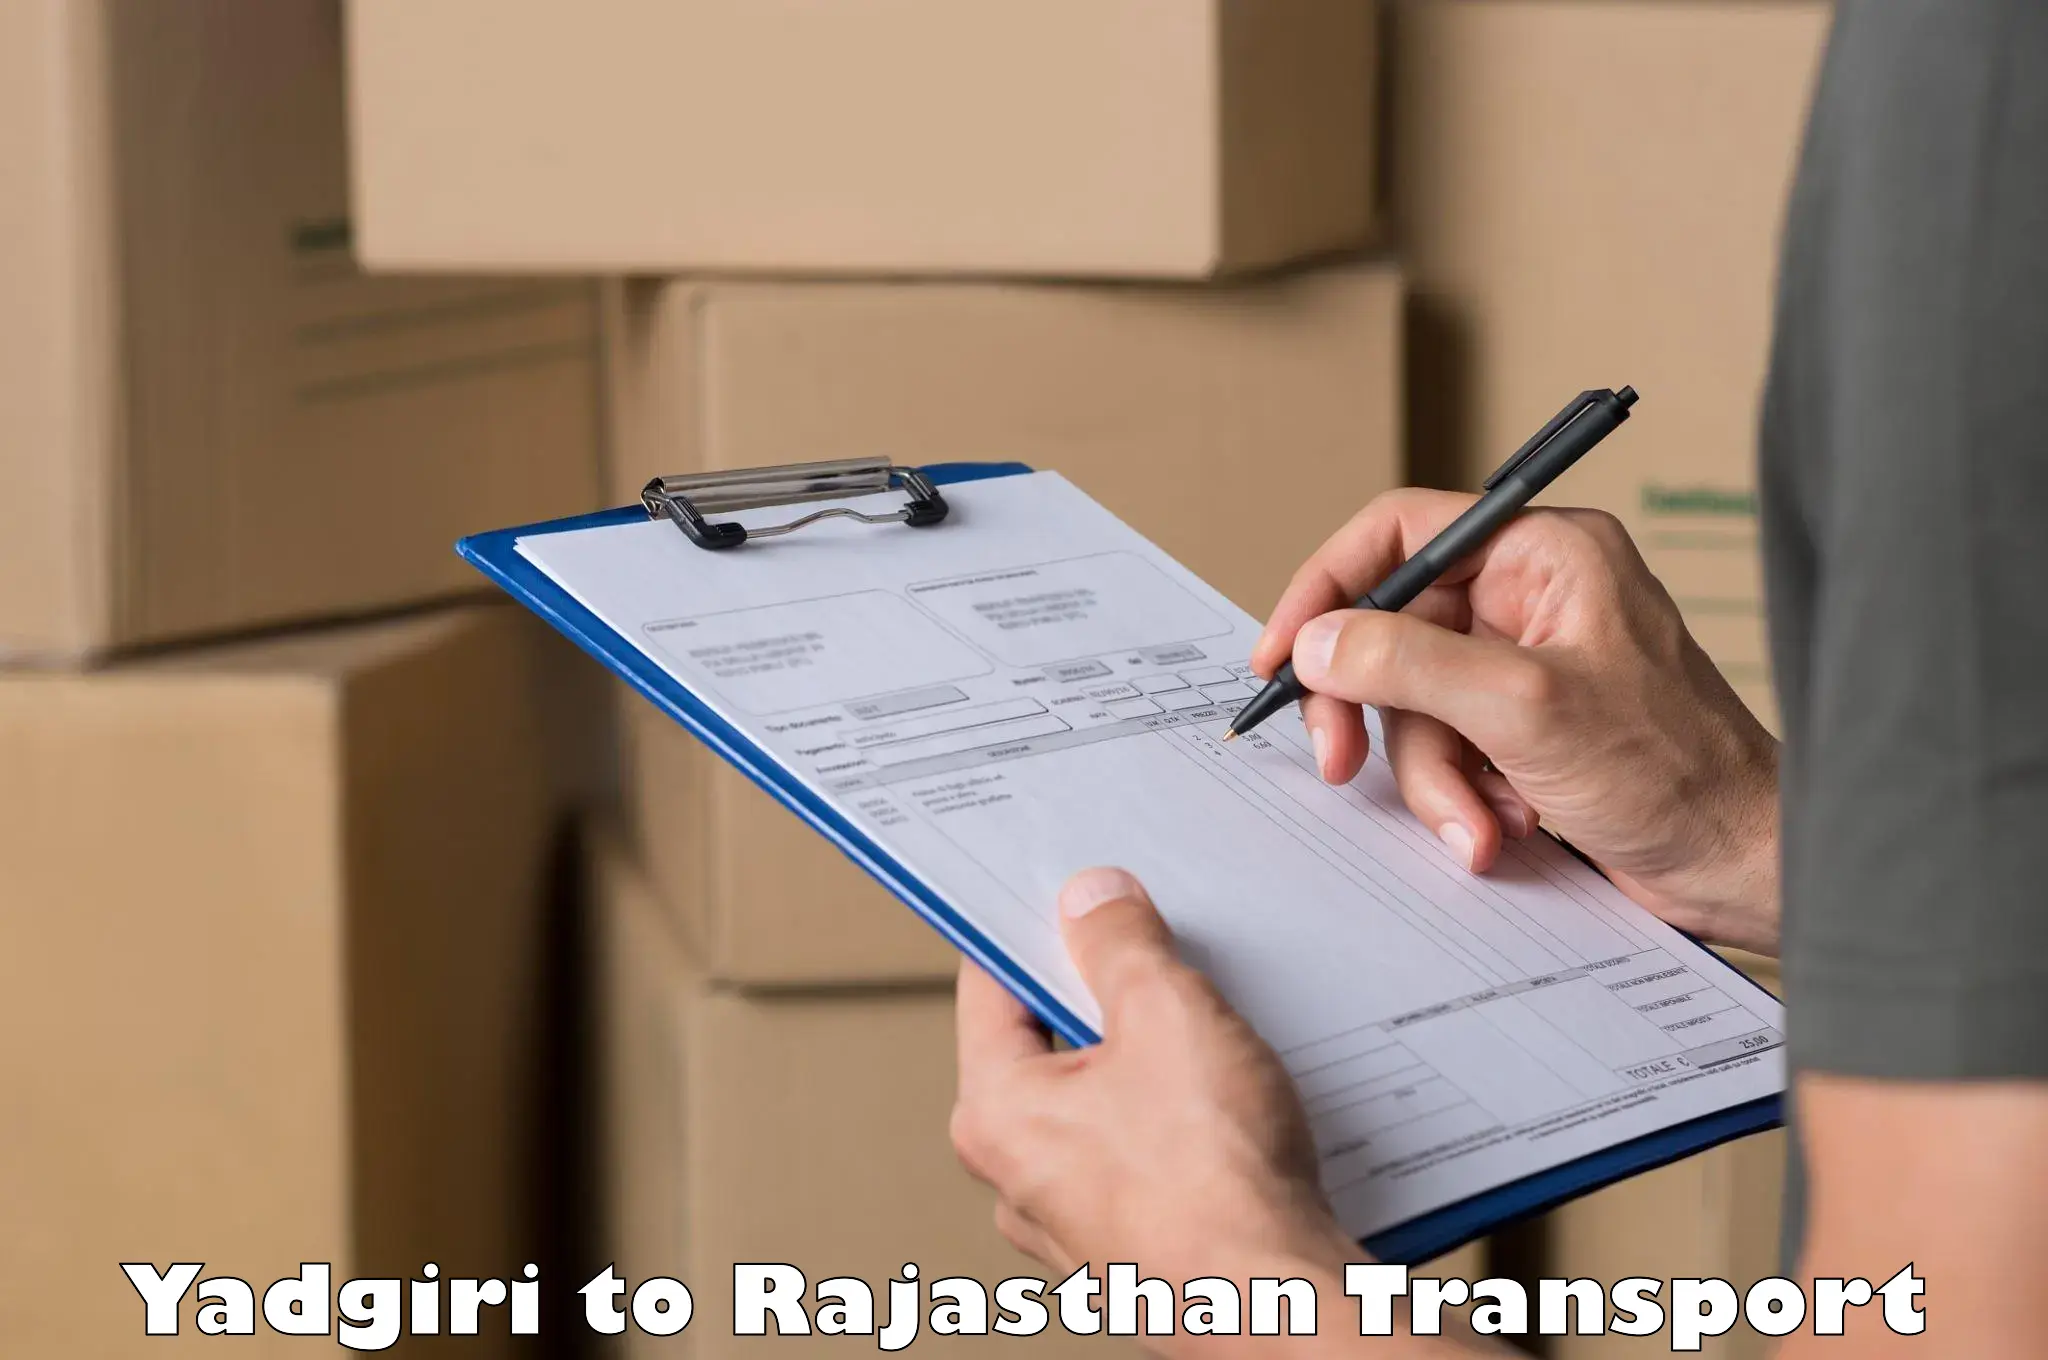 Material transport services Yadgiri to Kumbhalgarh